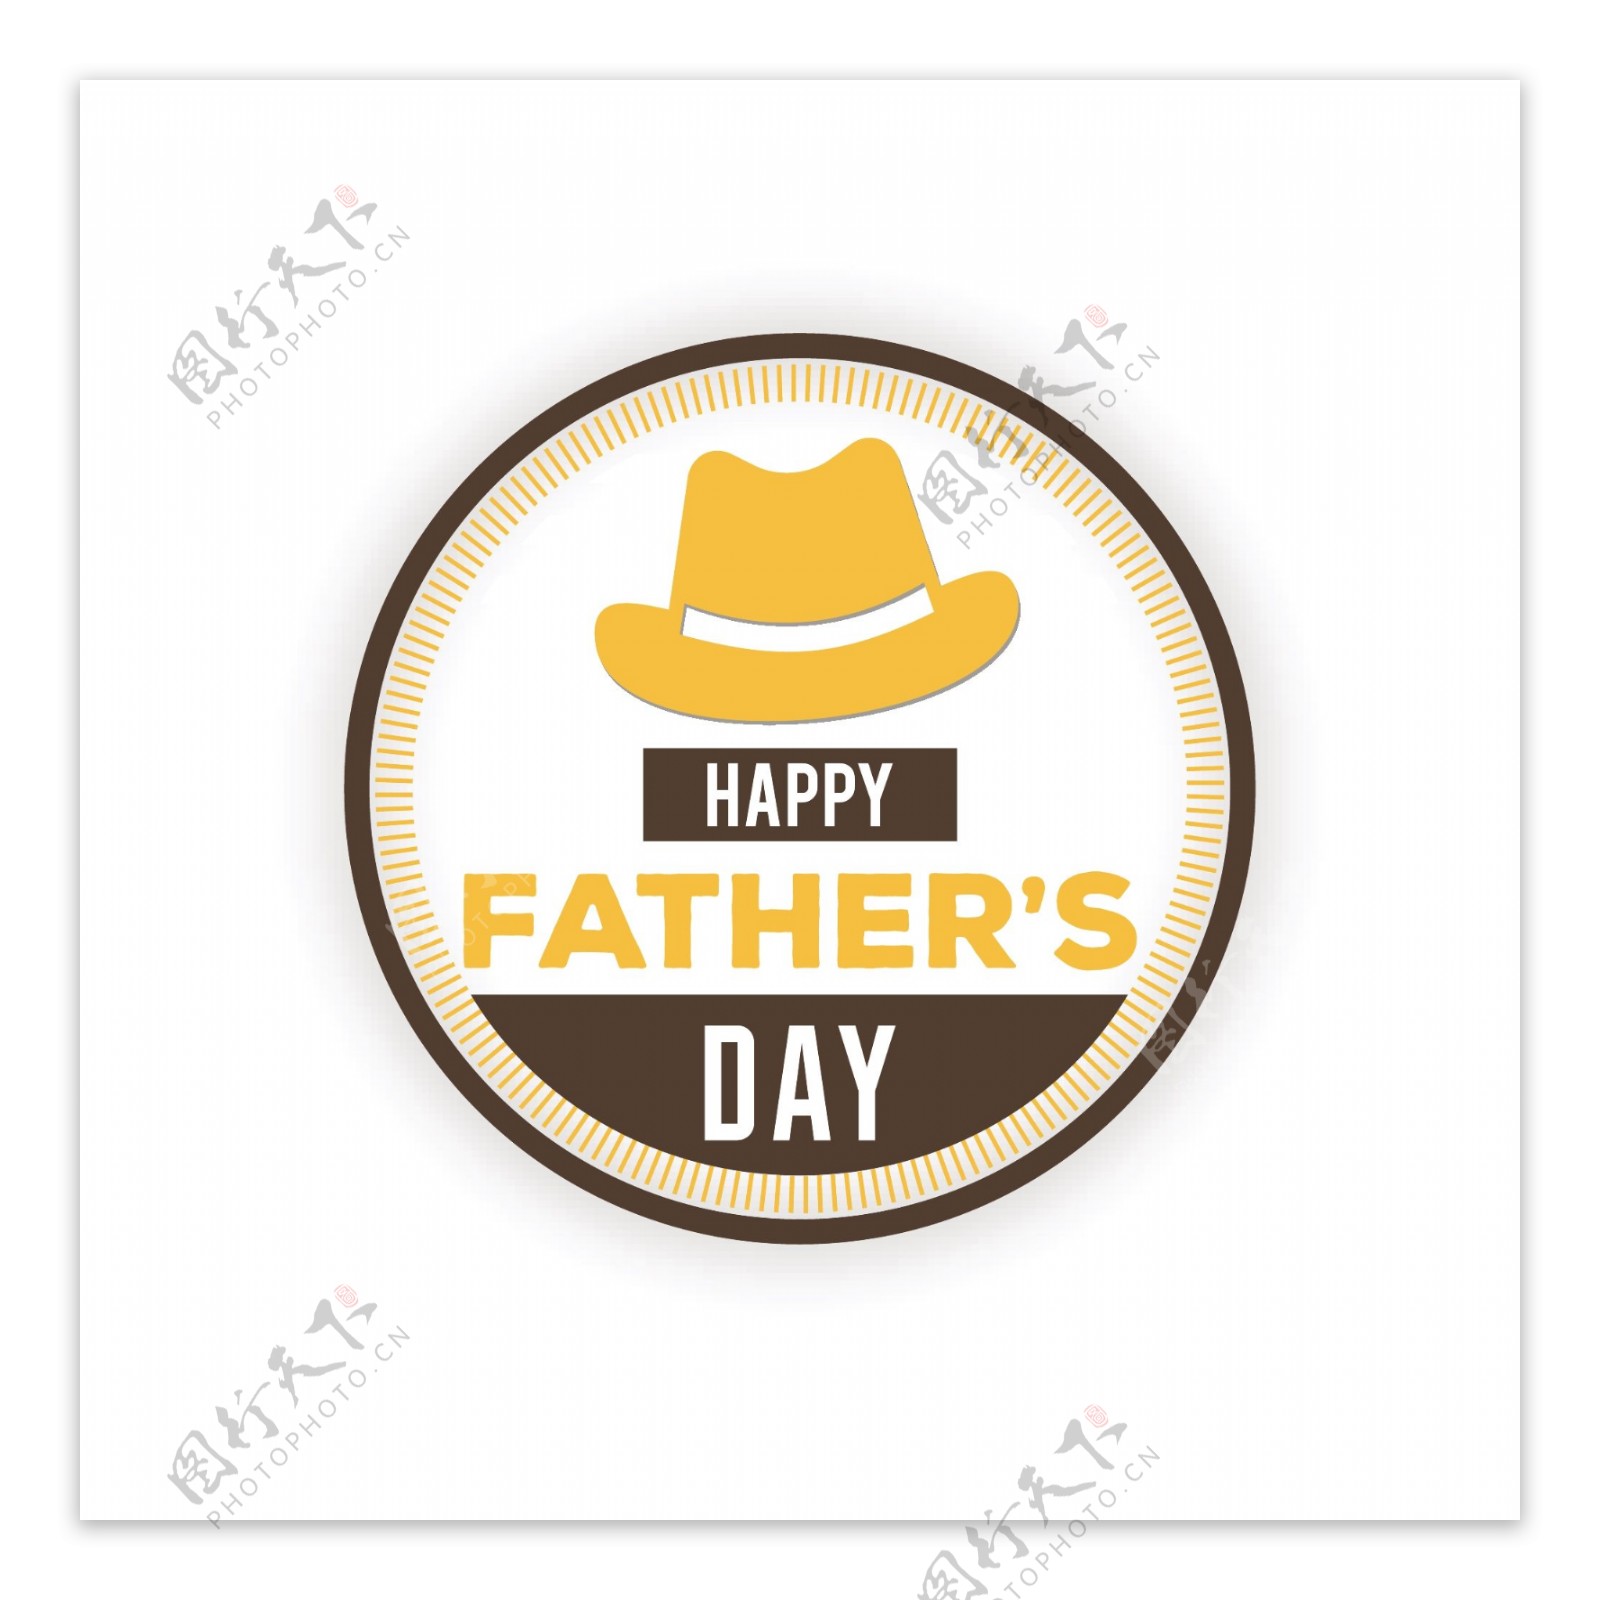 快乐的父亲节帽子圆形徽章图标